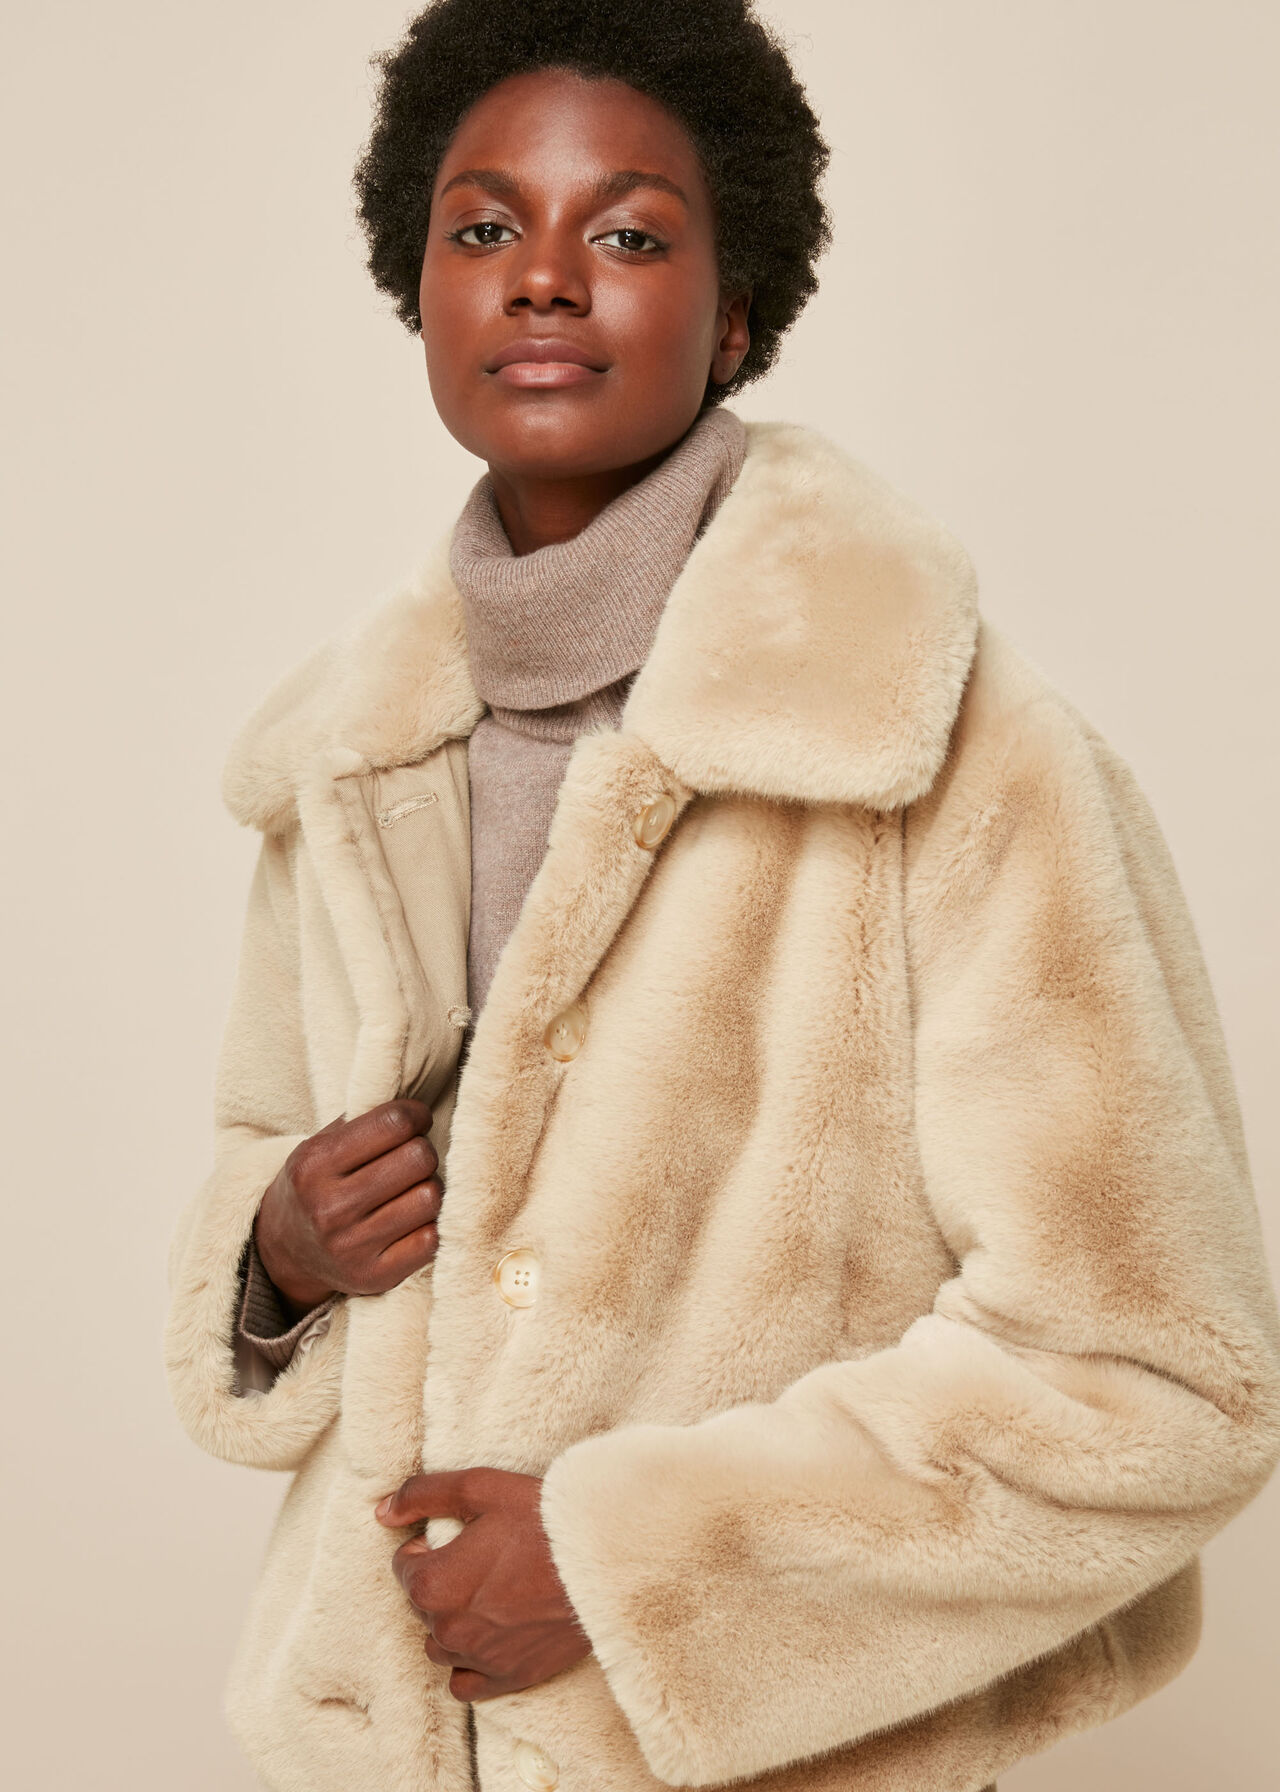 Fuzzy Coat